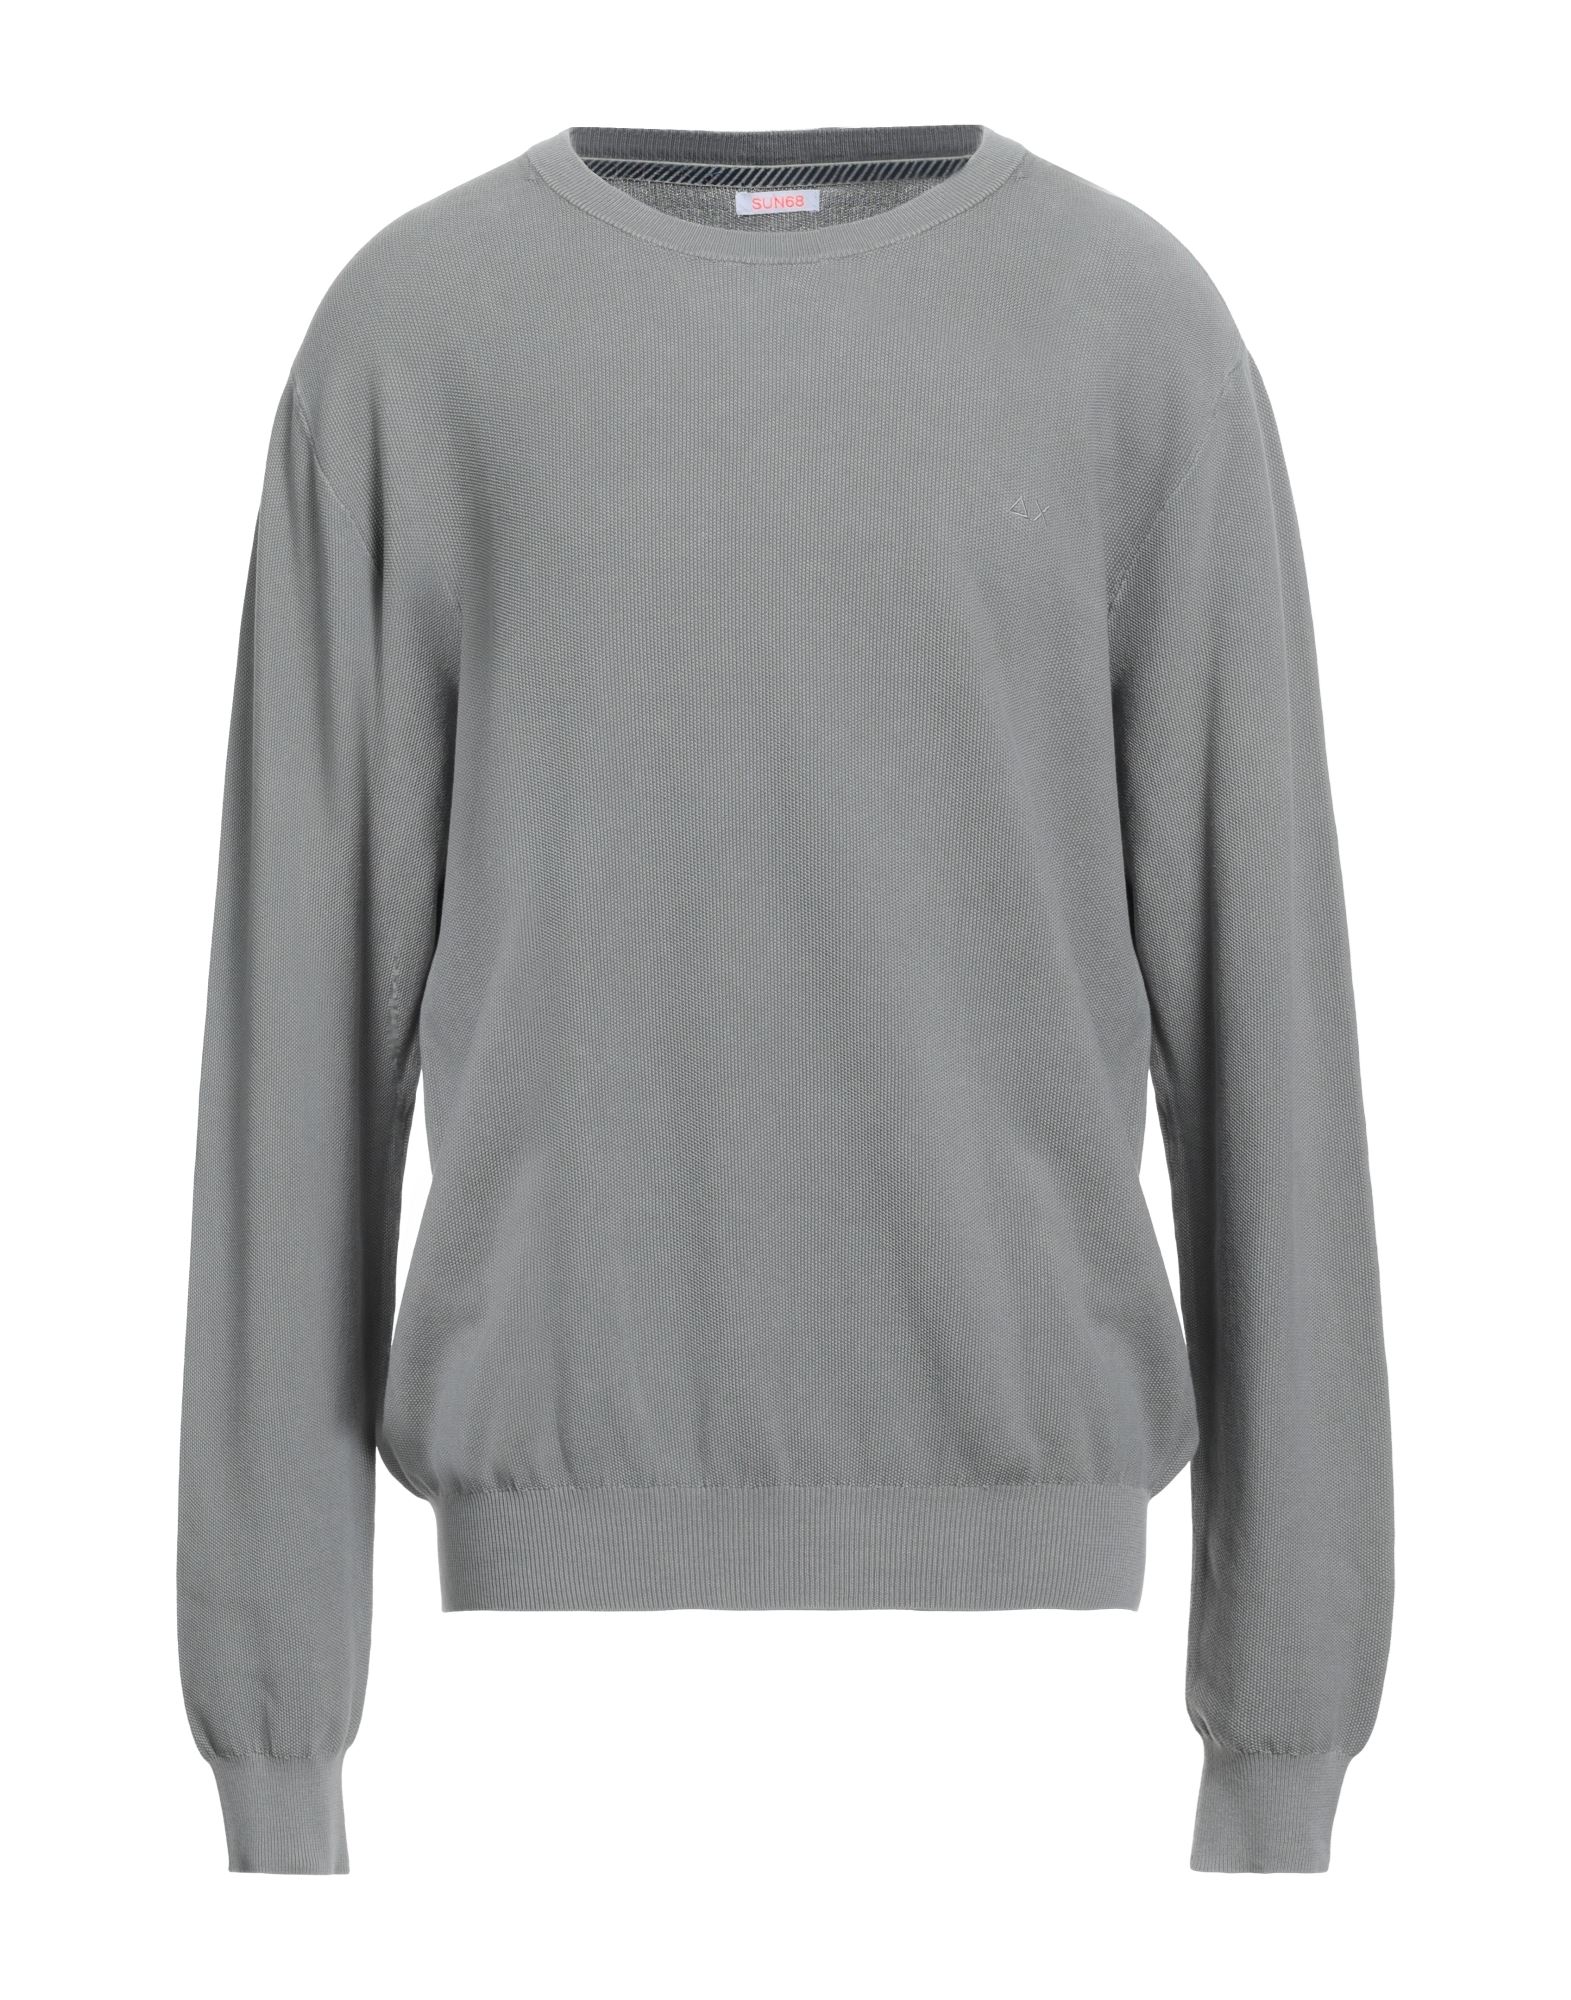 Sun 68 Sweaters In Grey